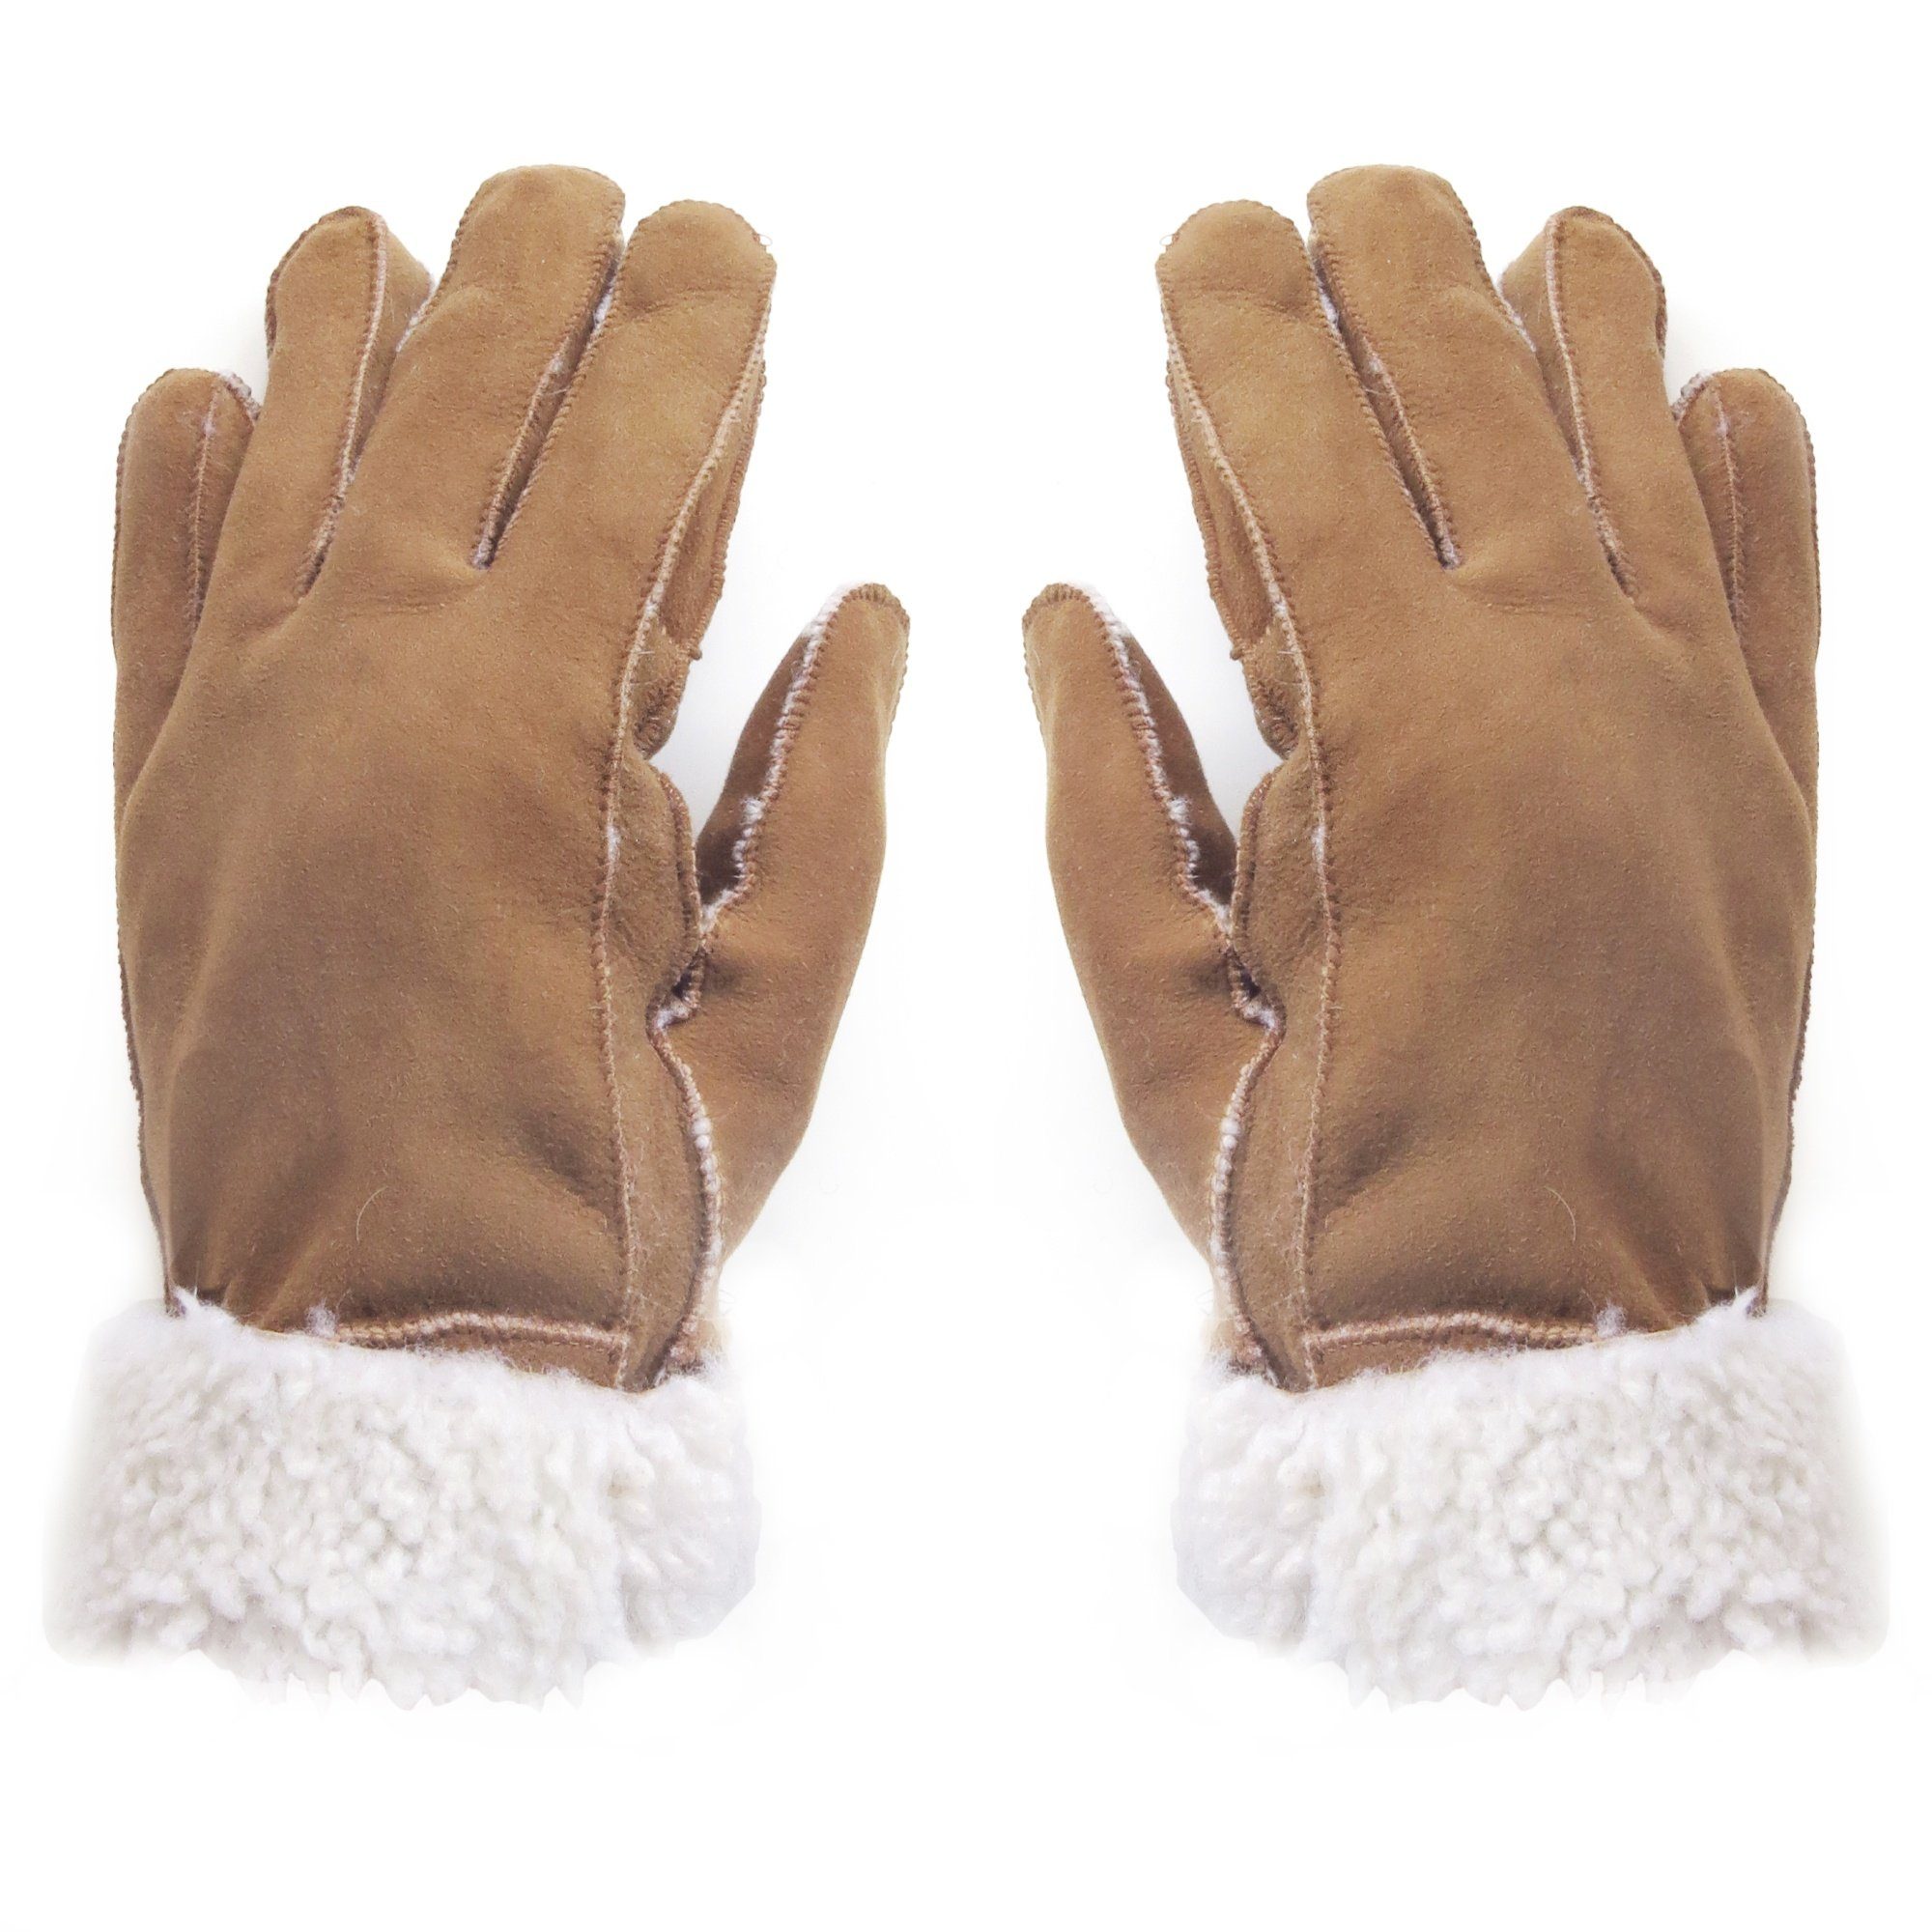 Sonia Originelli Winter-Arbeitshandschuhe Handschuhe aus unisex abweichen können des braun Schaffell warm abweichen, hochwertig Struktur Fells Lammfell kann Farben